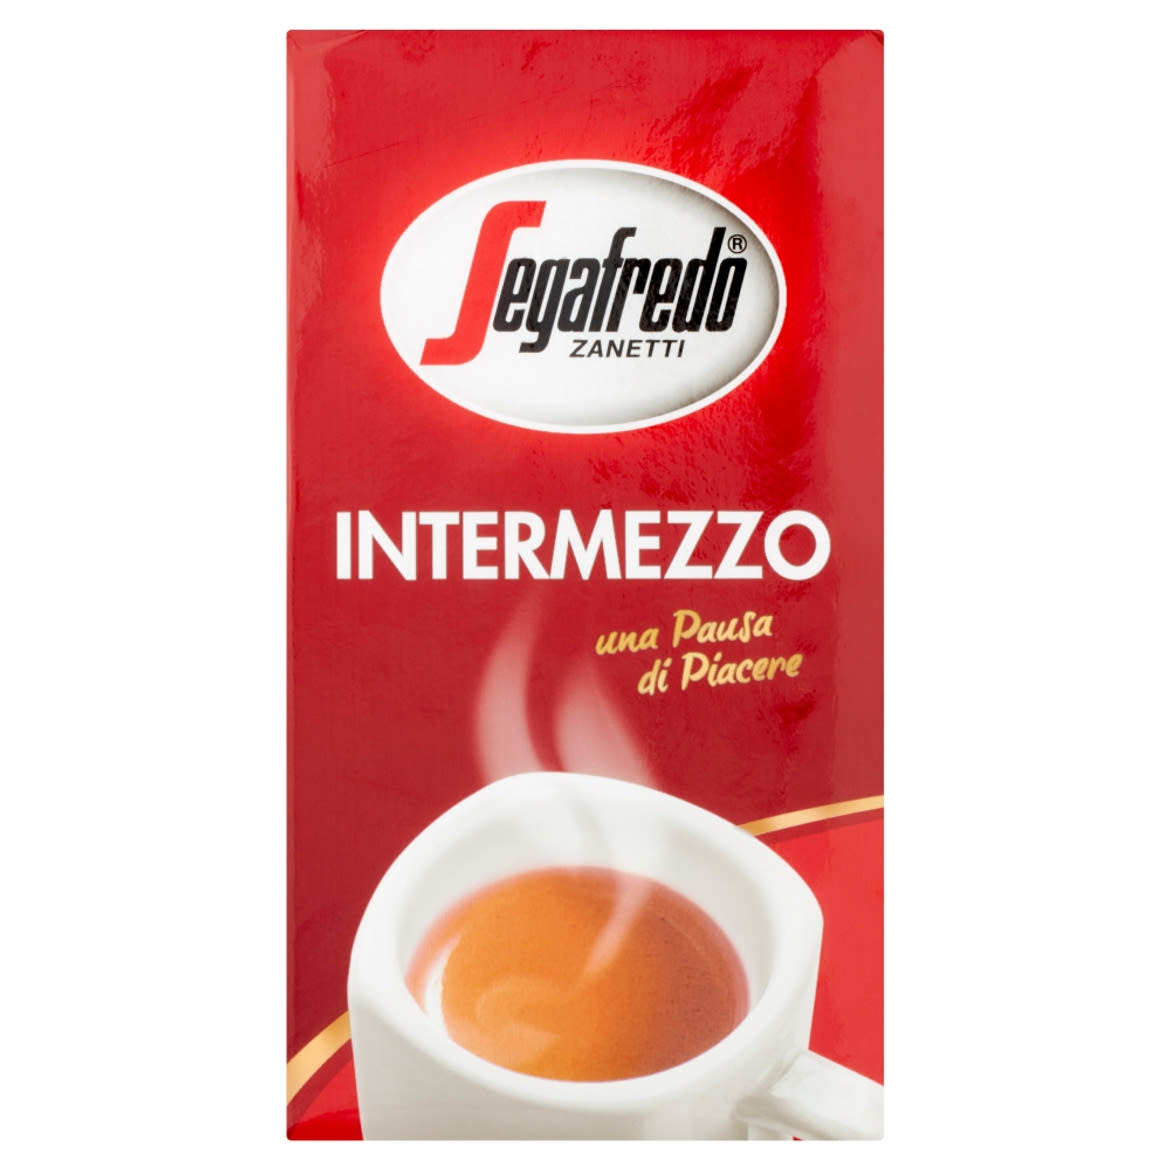 Segafredo Zanetti Intermezzo őrölt pörkölt kávé